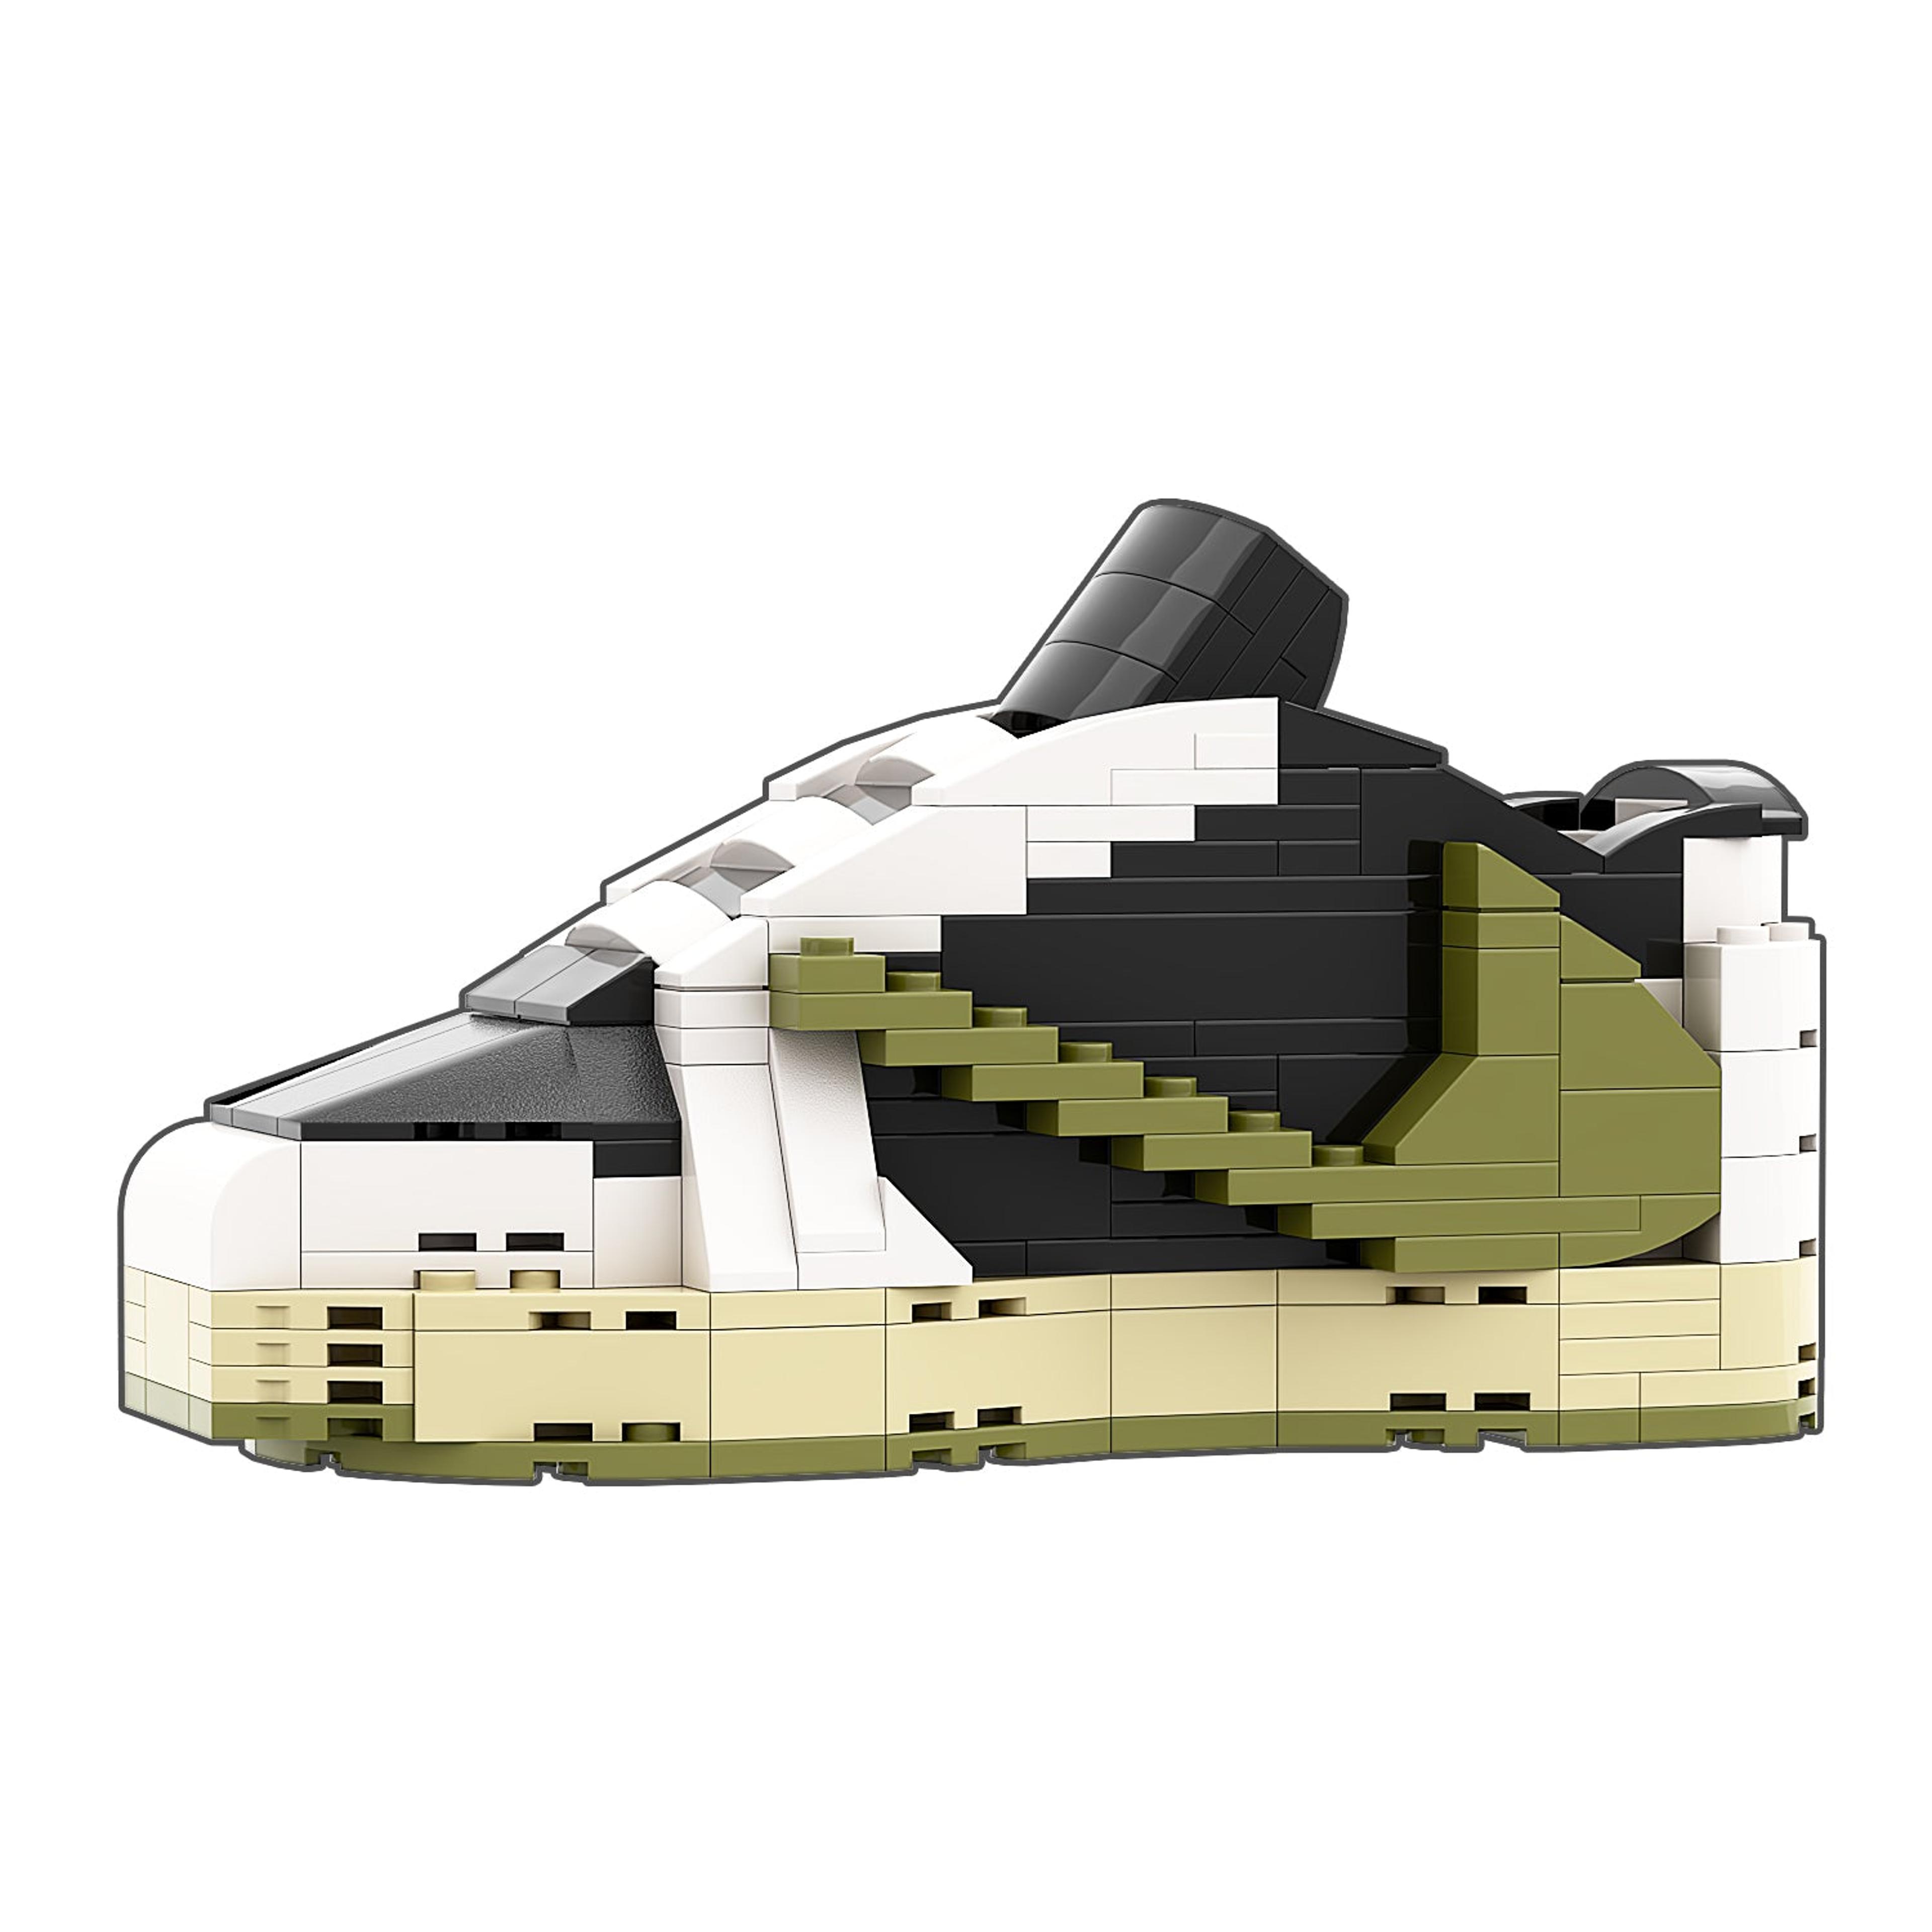 REGULAR "AJ1 Travis Scott Olive Low" Sneaker Bricks with Mini Fi